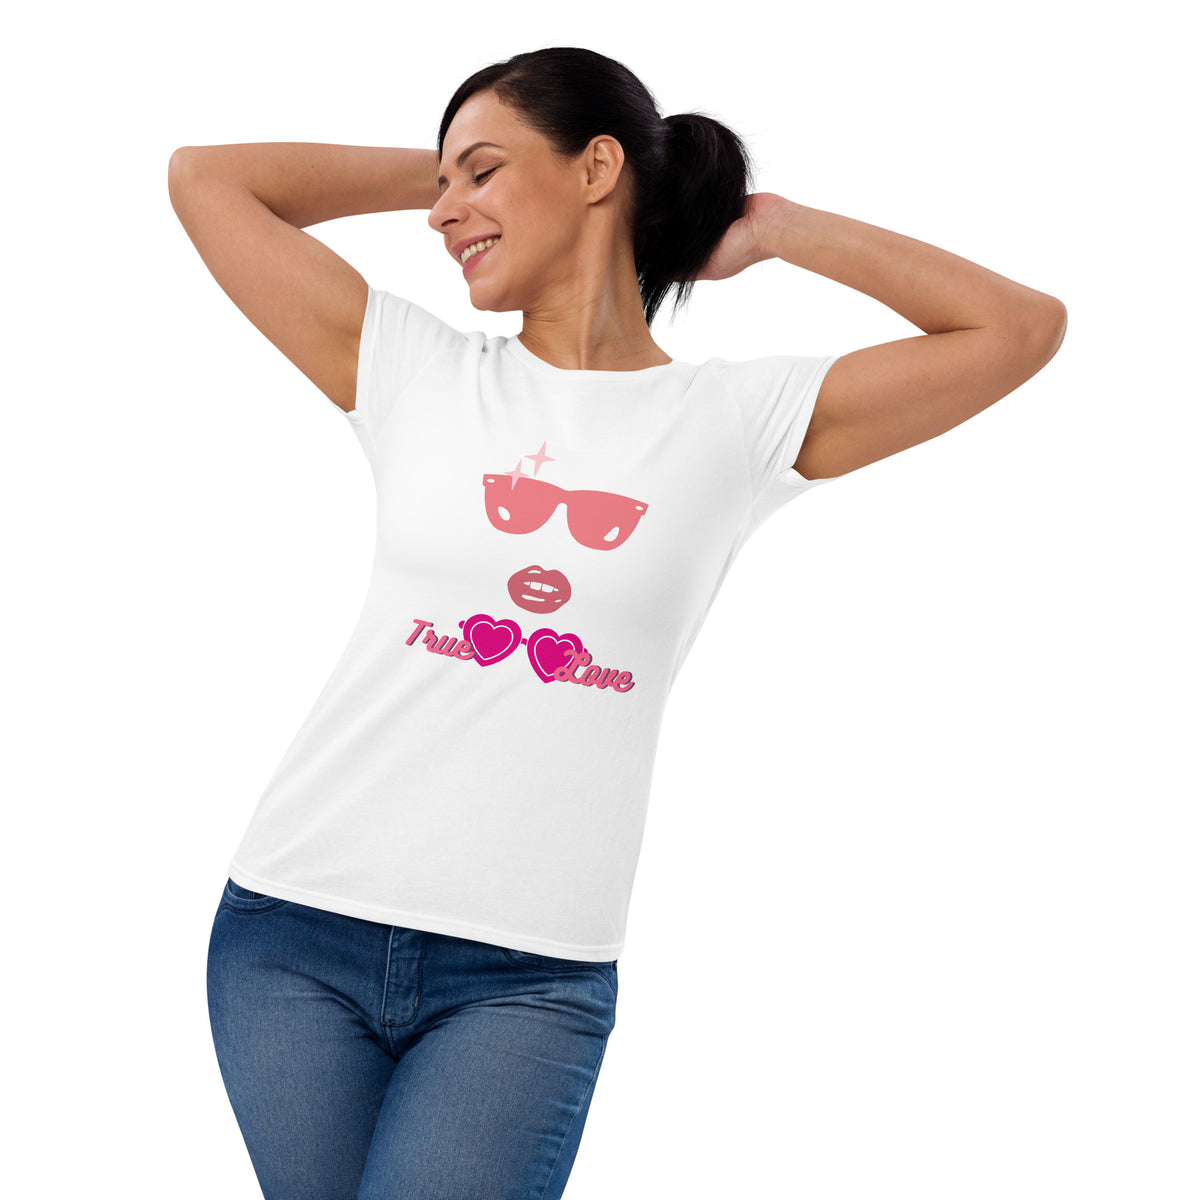 True Love Women's Short Sleeve T-Shirt